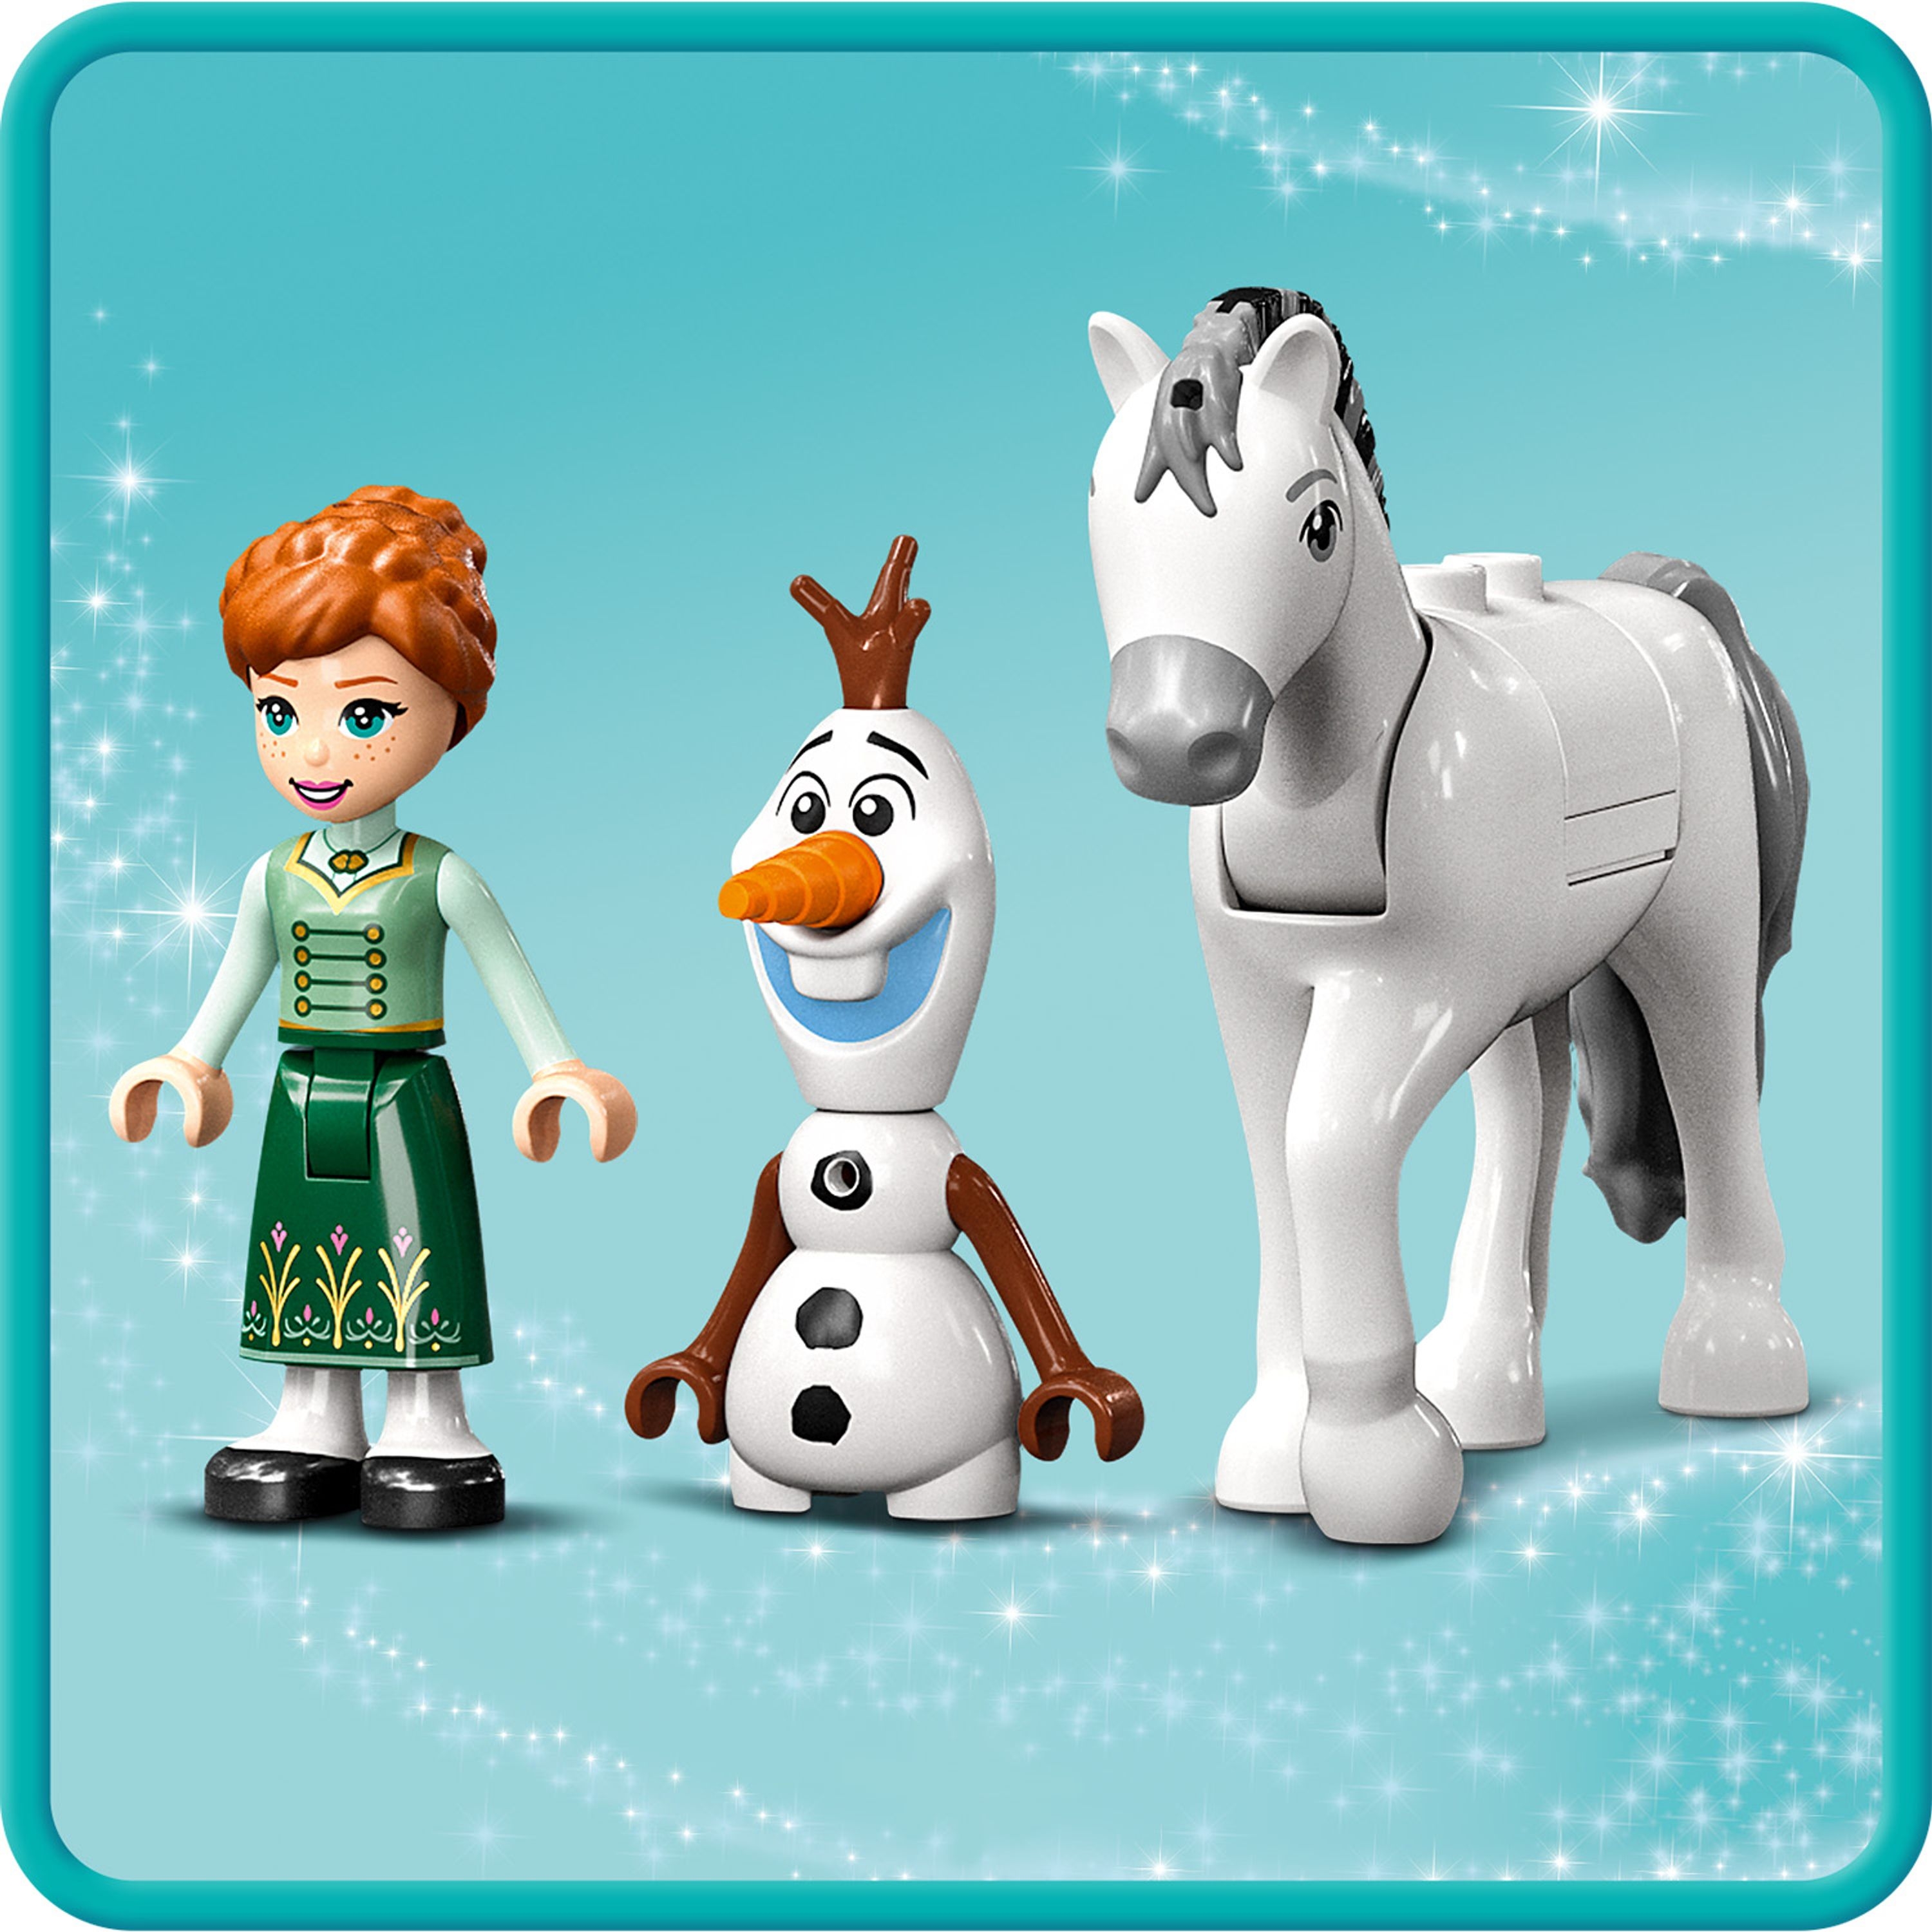 LEGO Disney Princess: Zabawa w zamku z Anną i Olafem (43204)